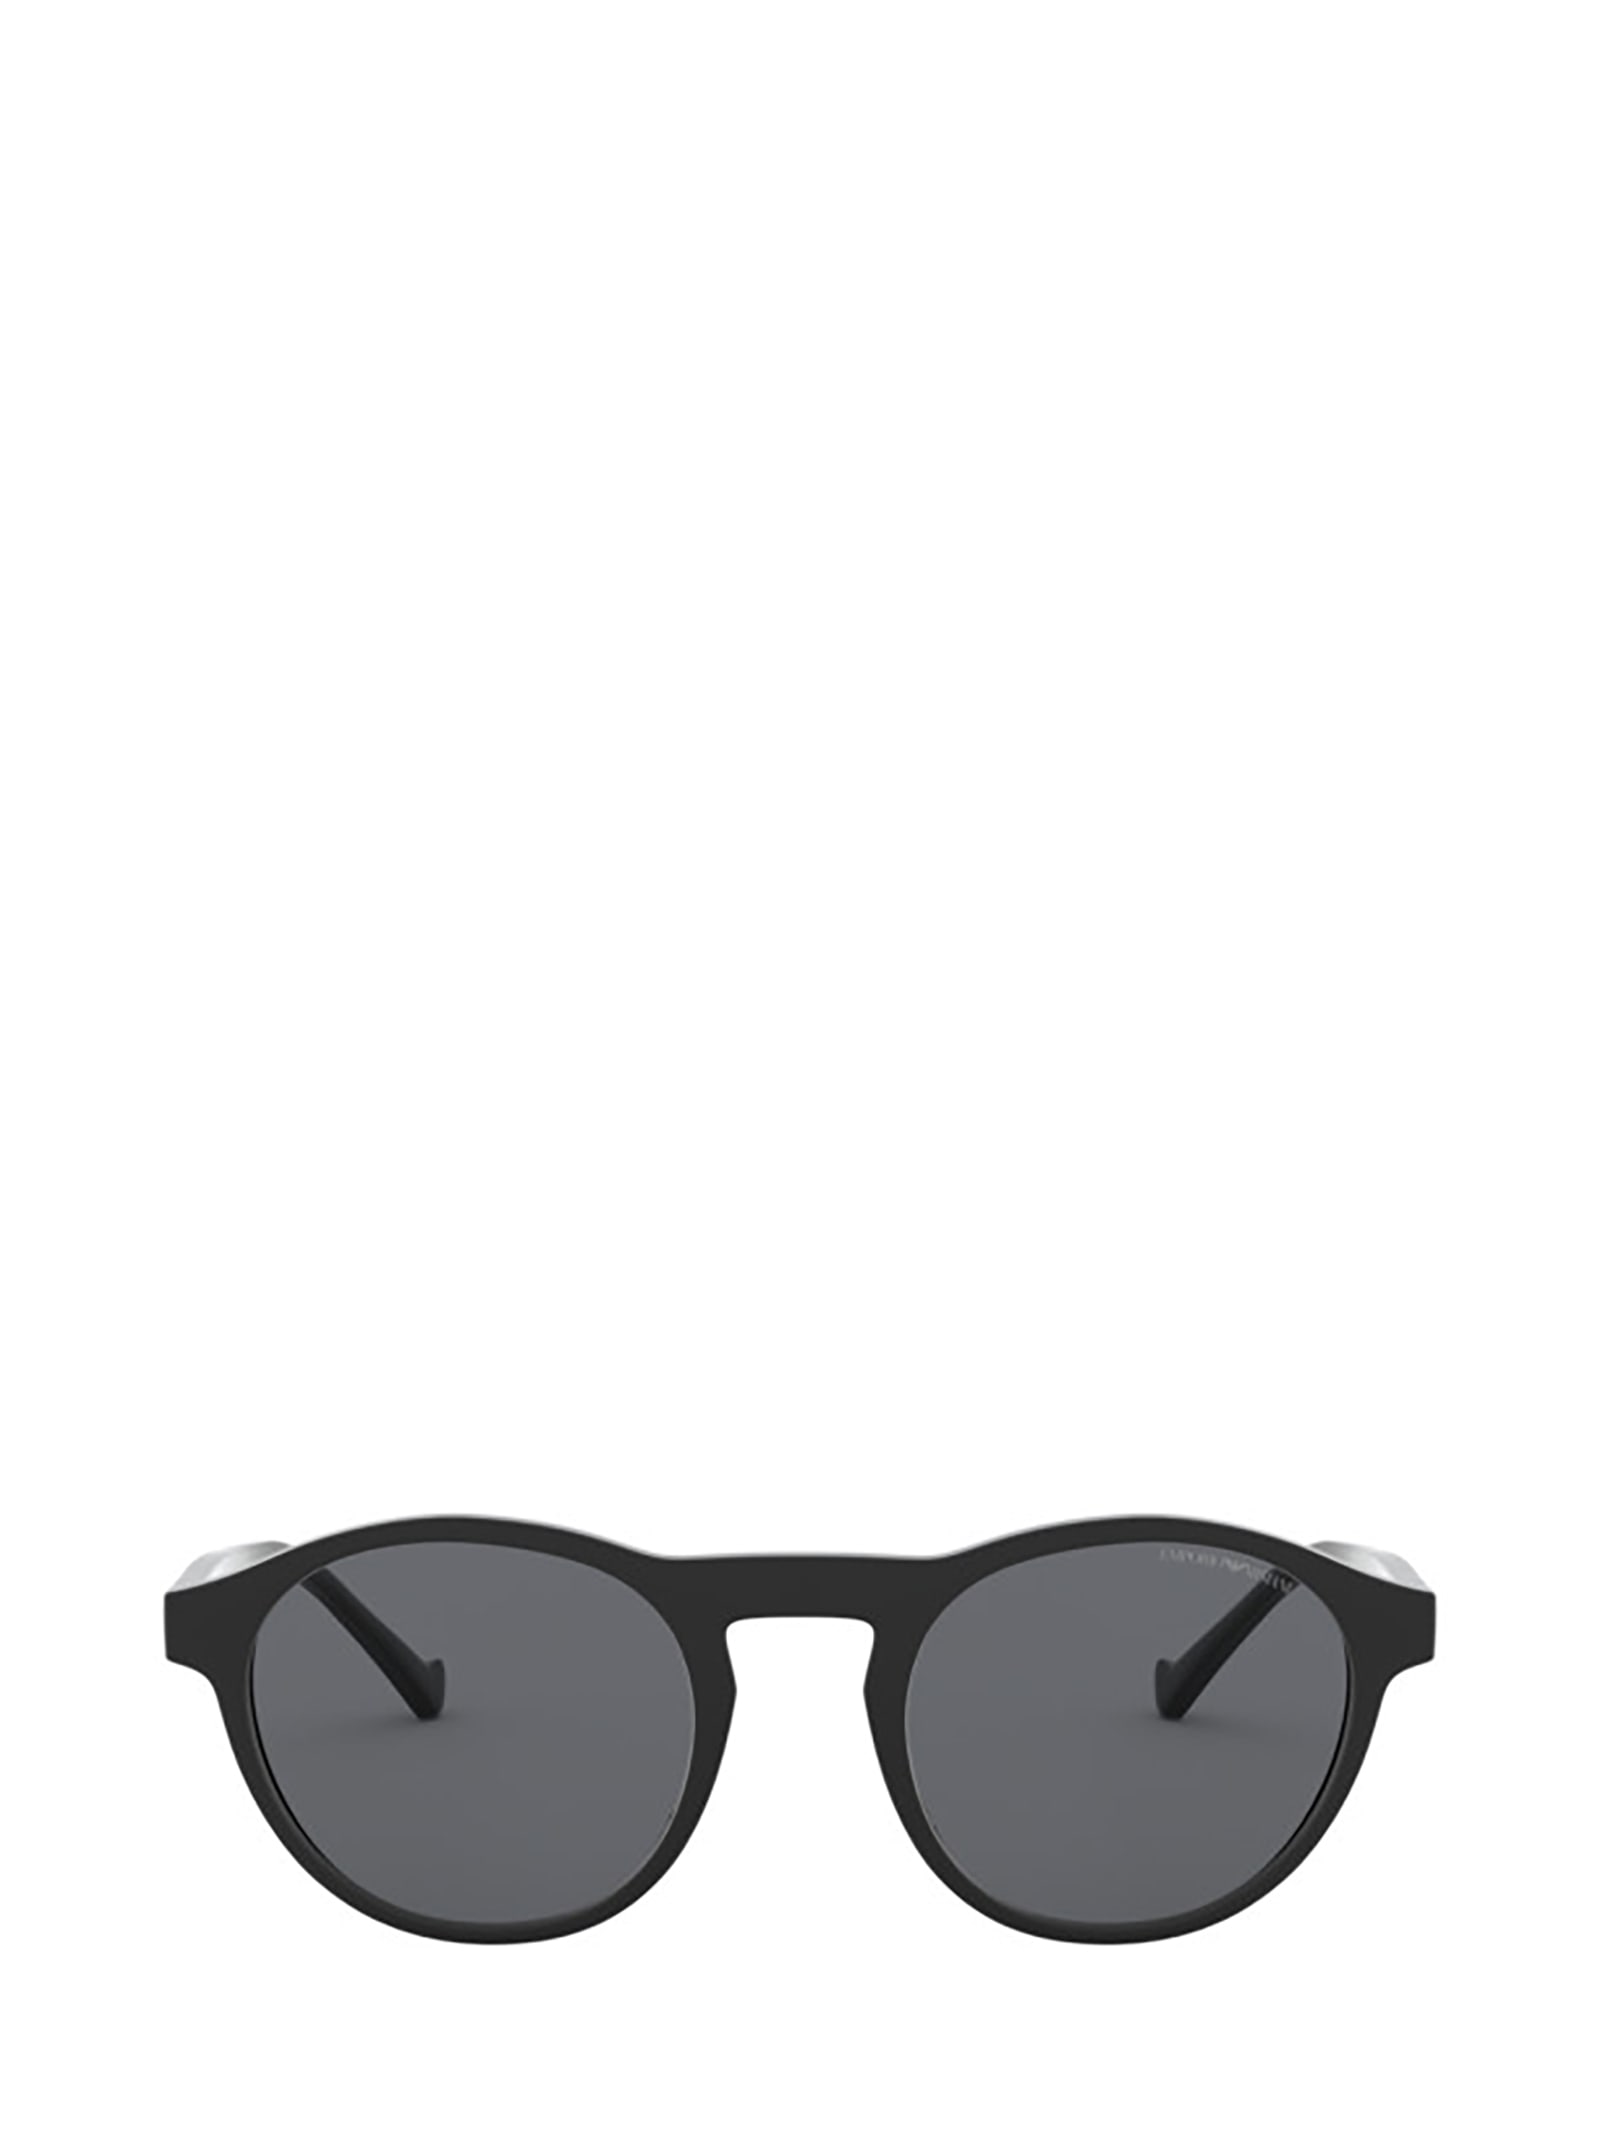 Emporio Armani Emporio Armani Ea4138 Matte Black Sunglasses